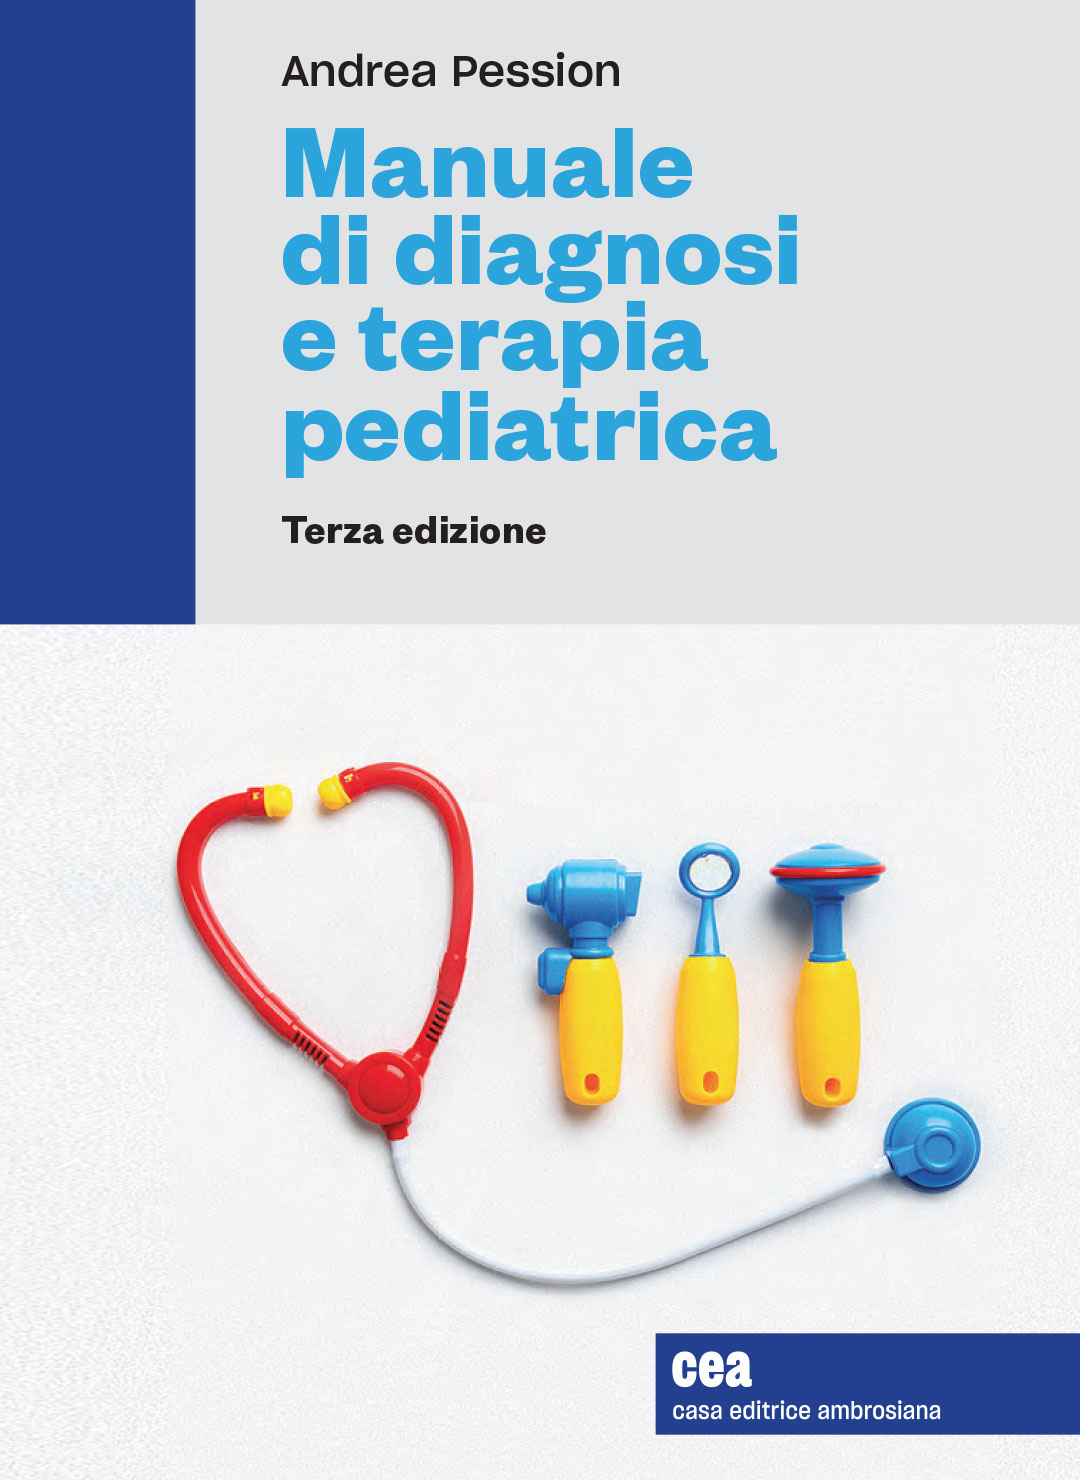 Manuale-di-diagnosi-e-terapia-pediatrica-epitesto